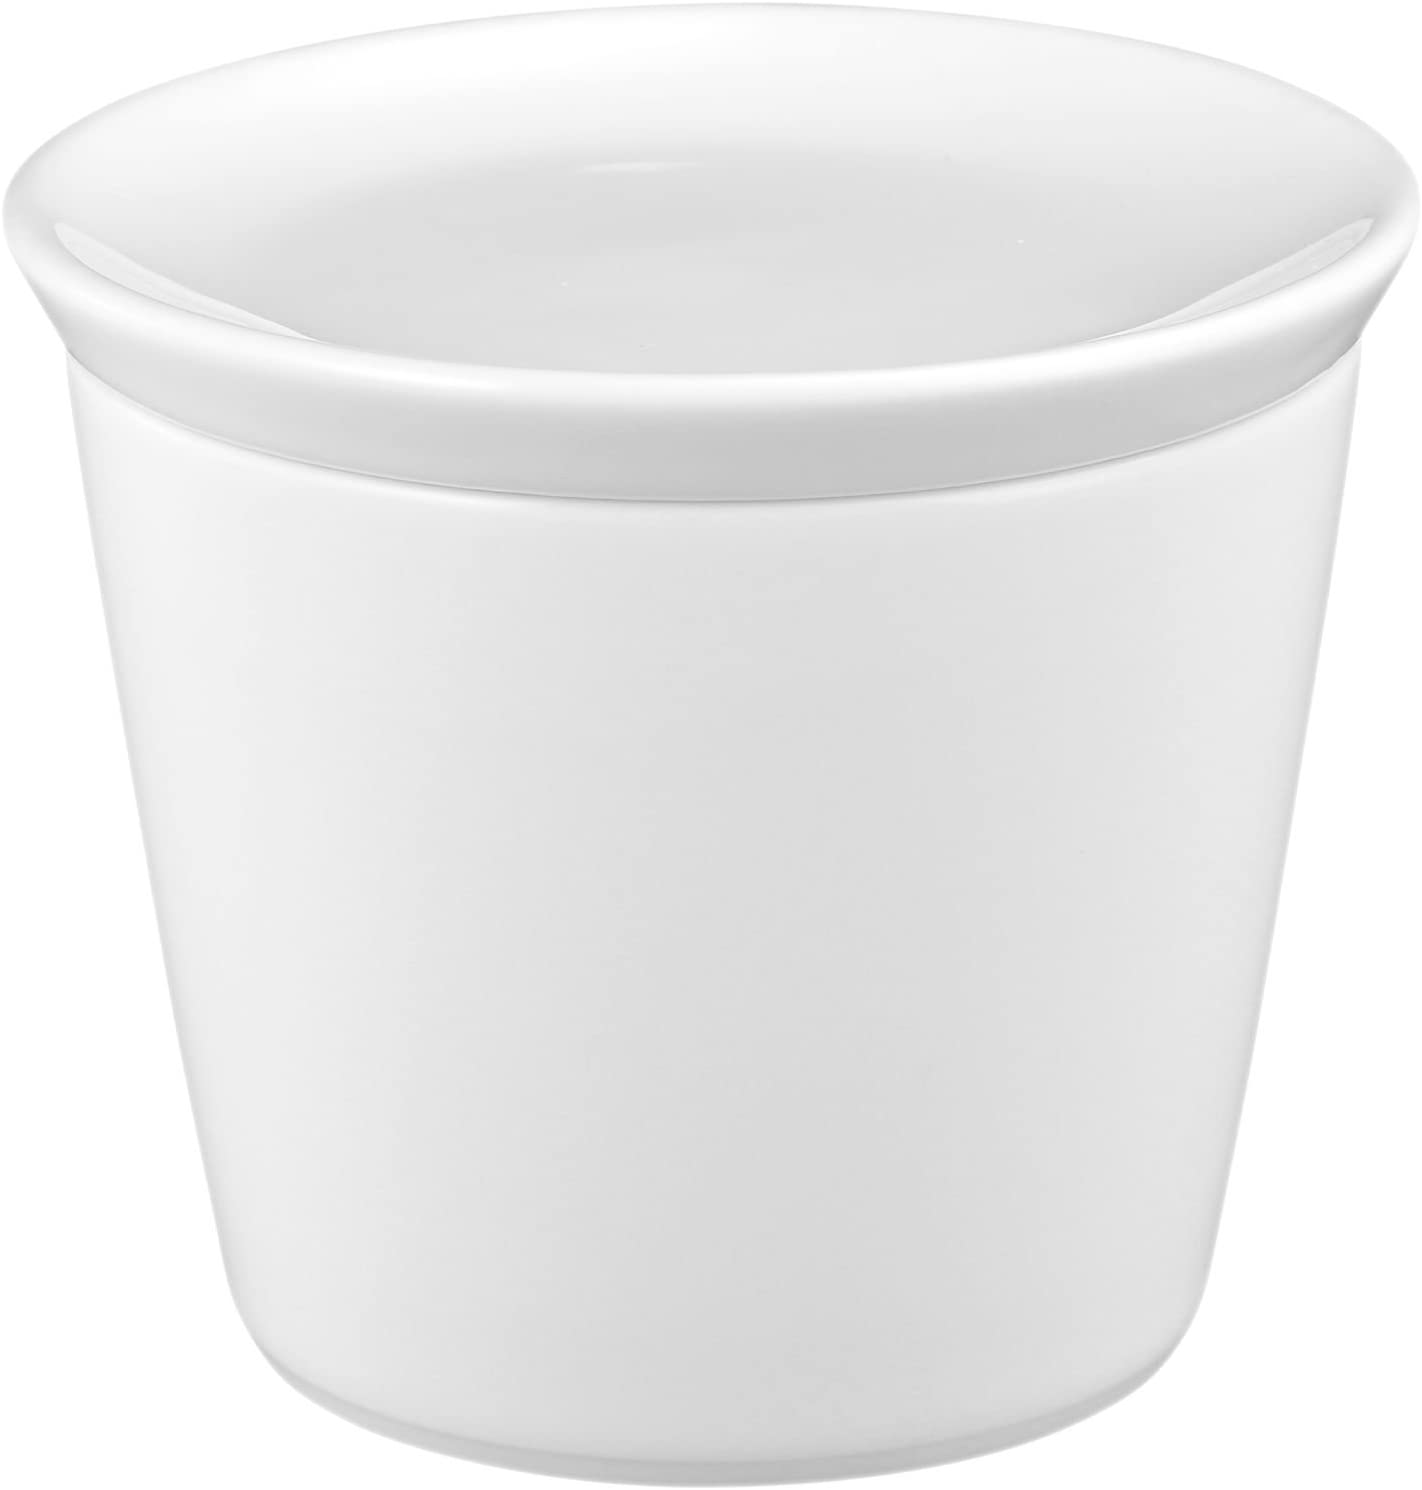 Seltmann Weiden No Limits 0.26L Sugar Bowl in White